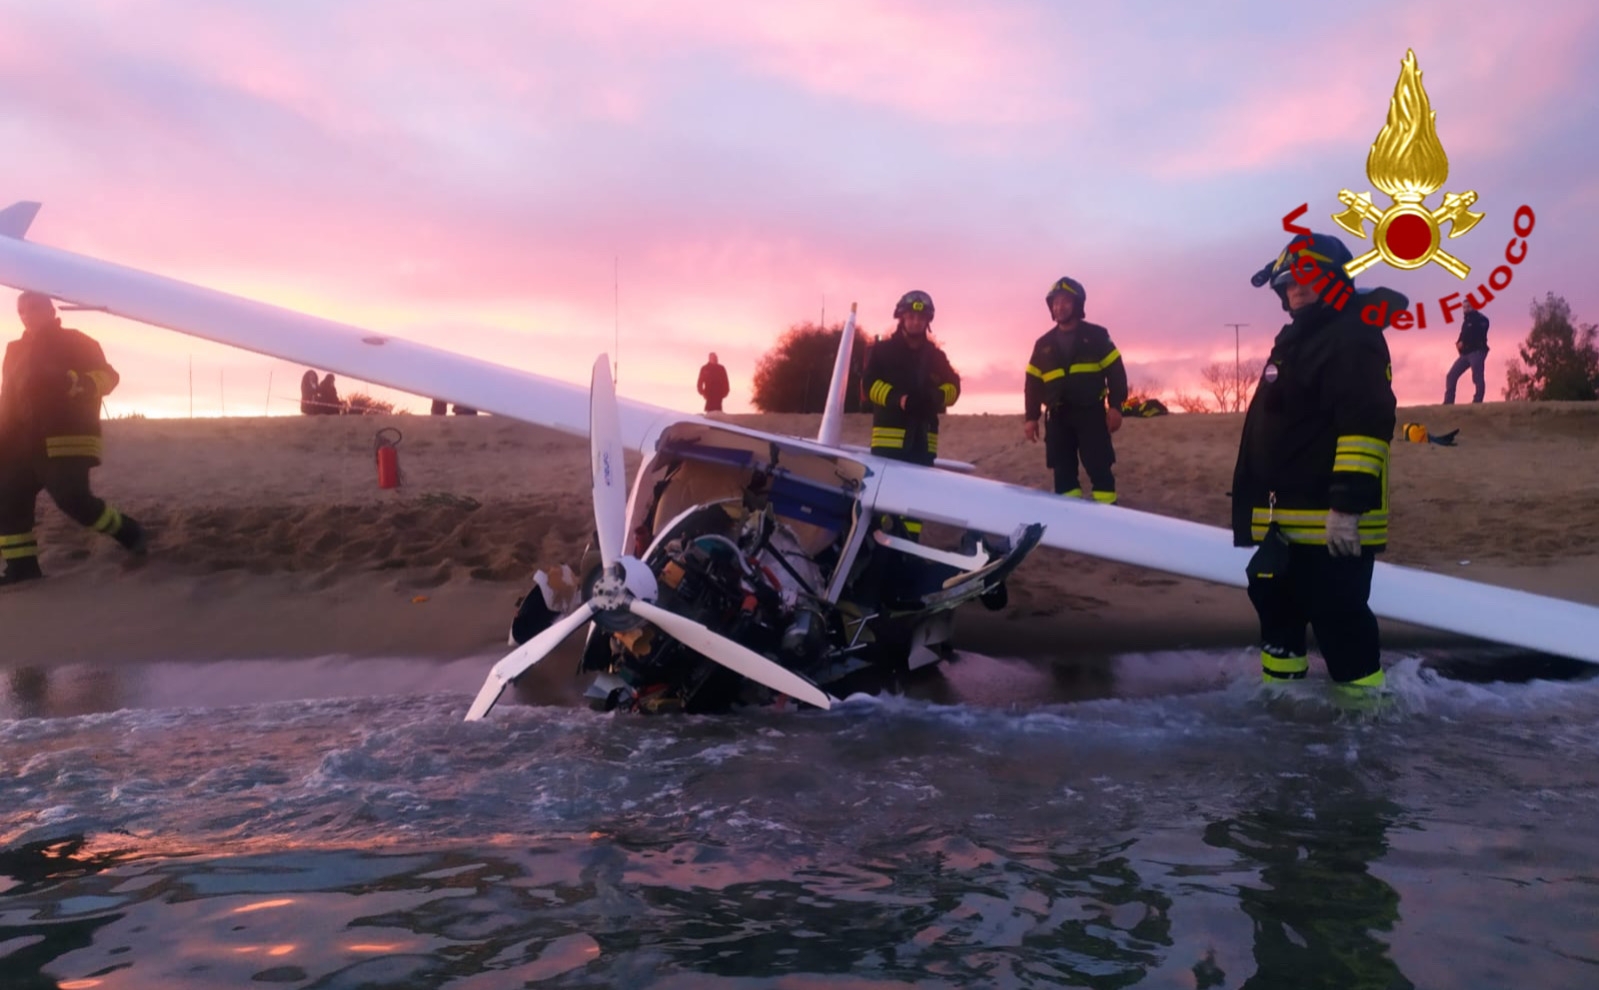 Tragedia sfiorata a Tortolì. Un’avaria al motore e aereo ultraleggero precipita in mare: due feriti